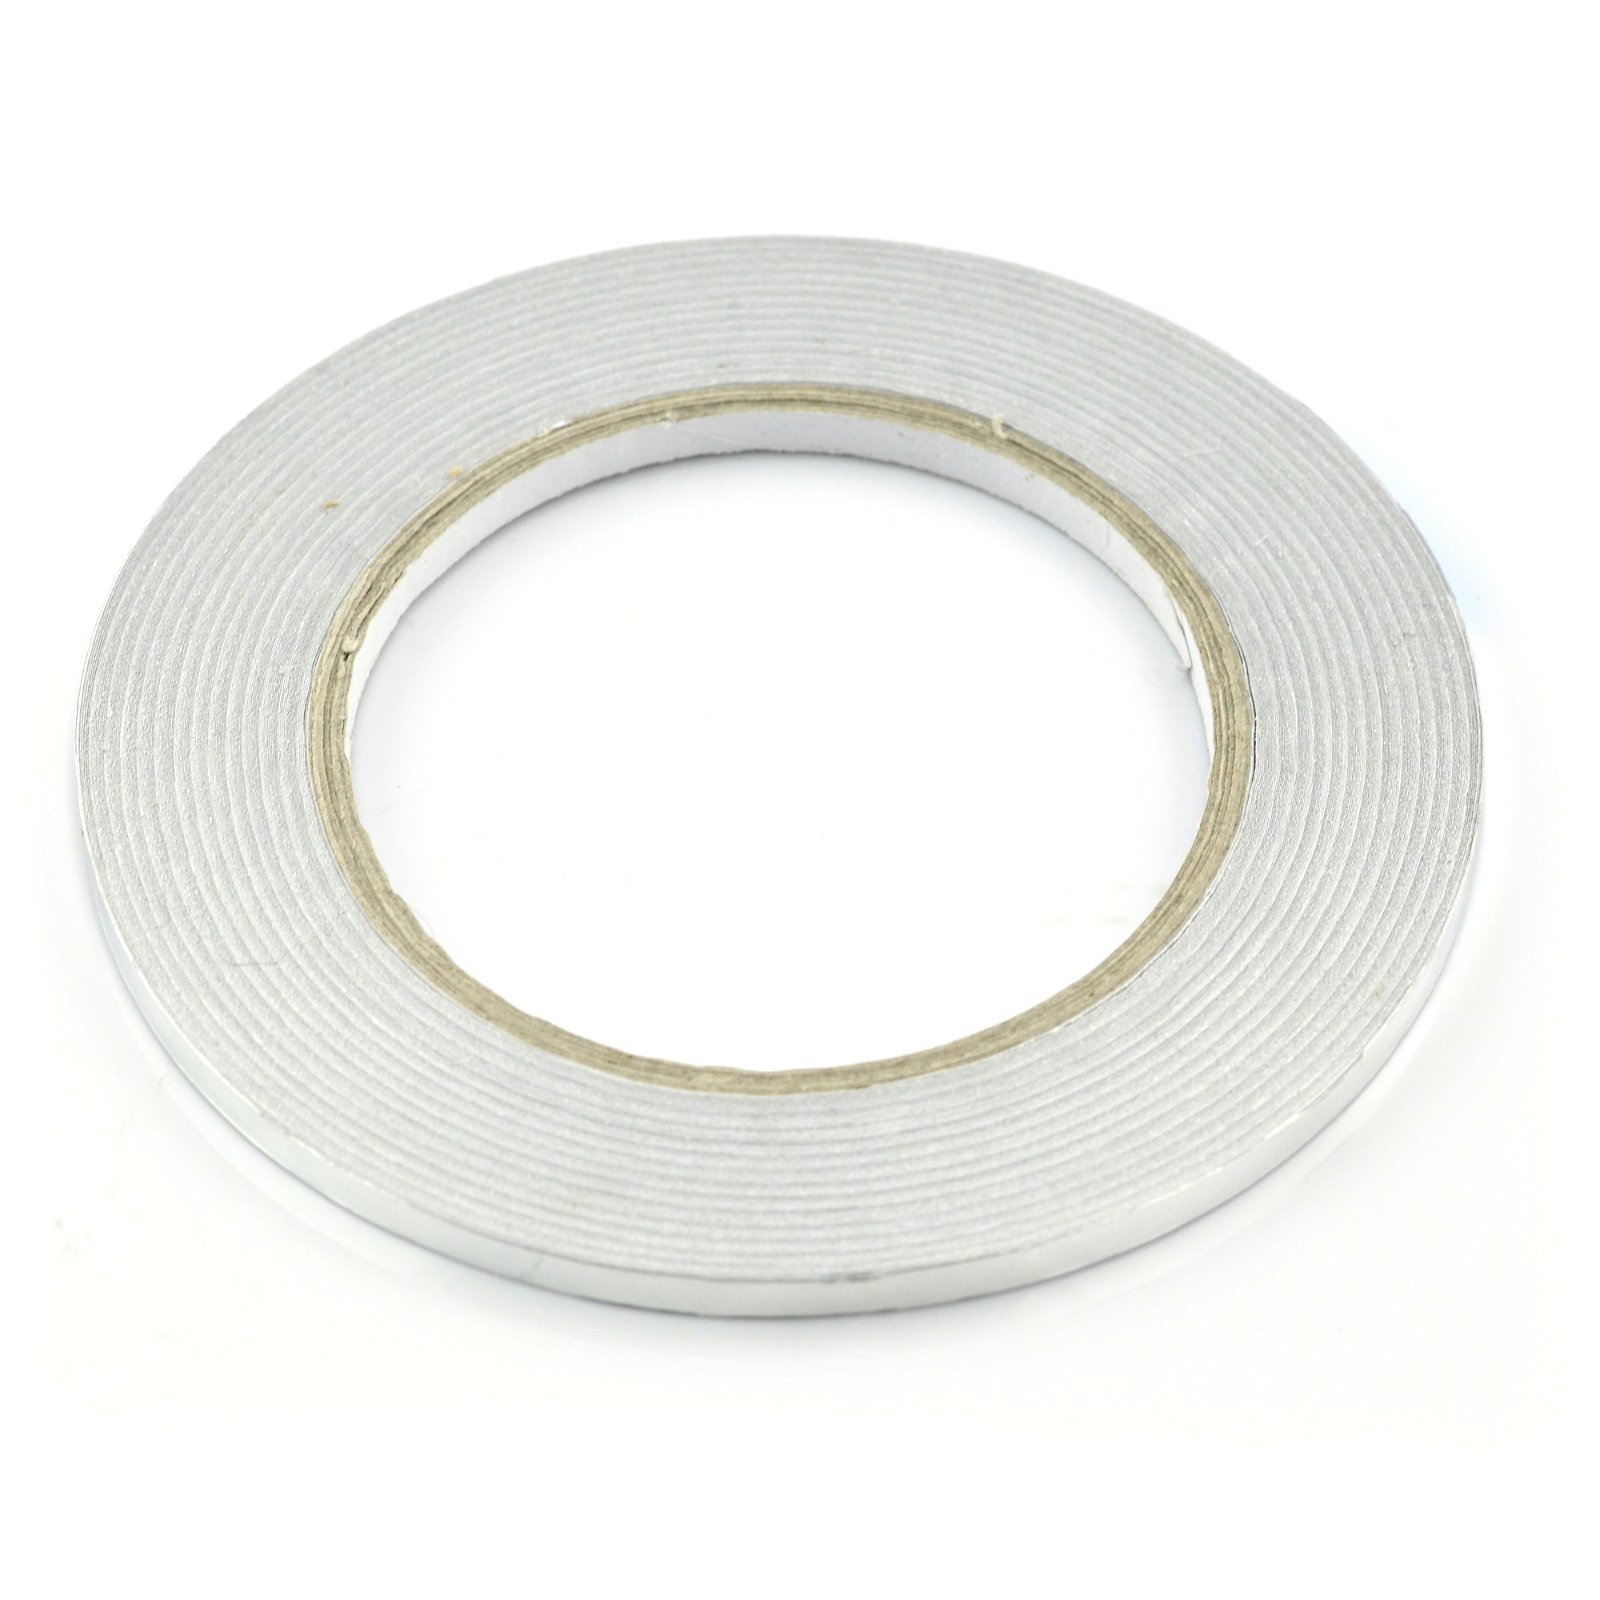 EMI aluminium tape with 5 mm adhesive